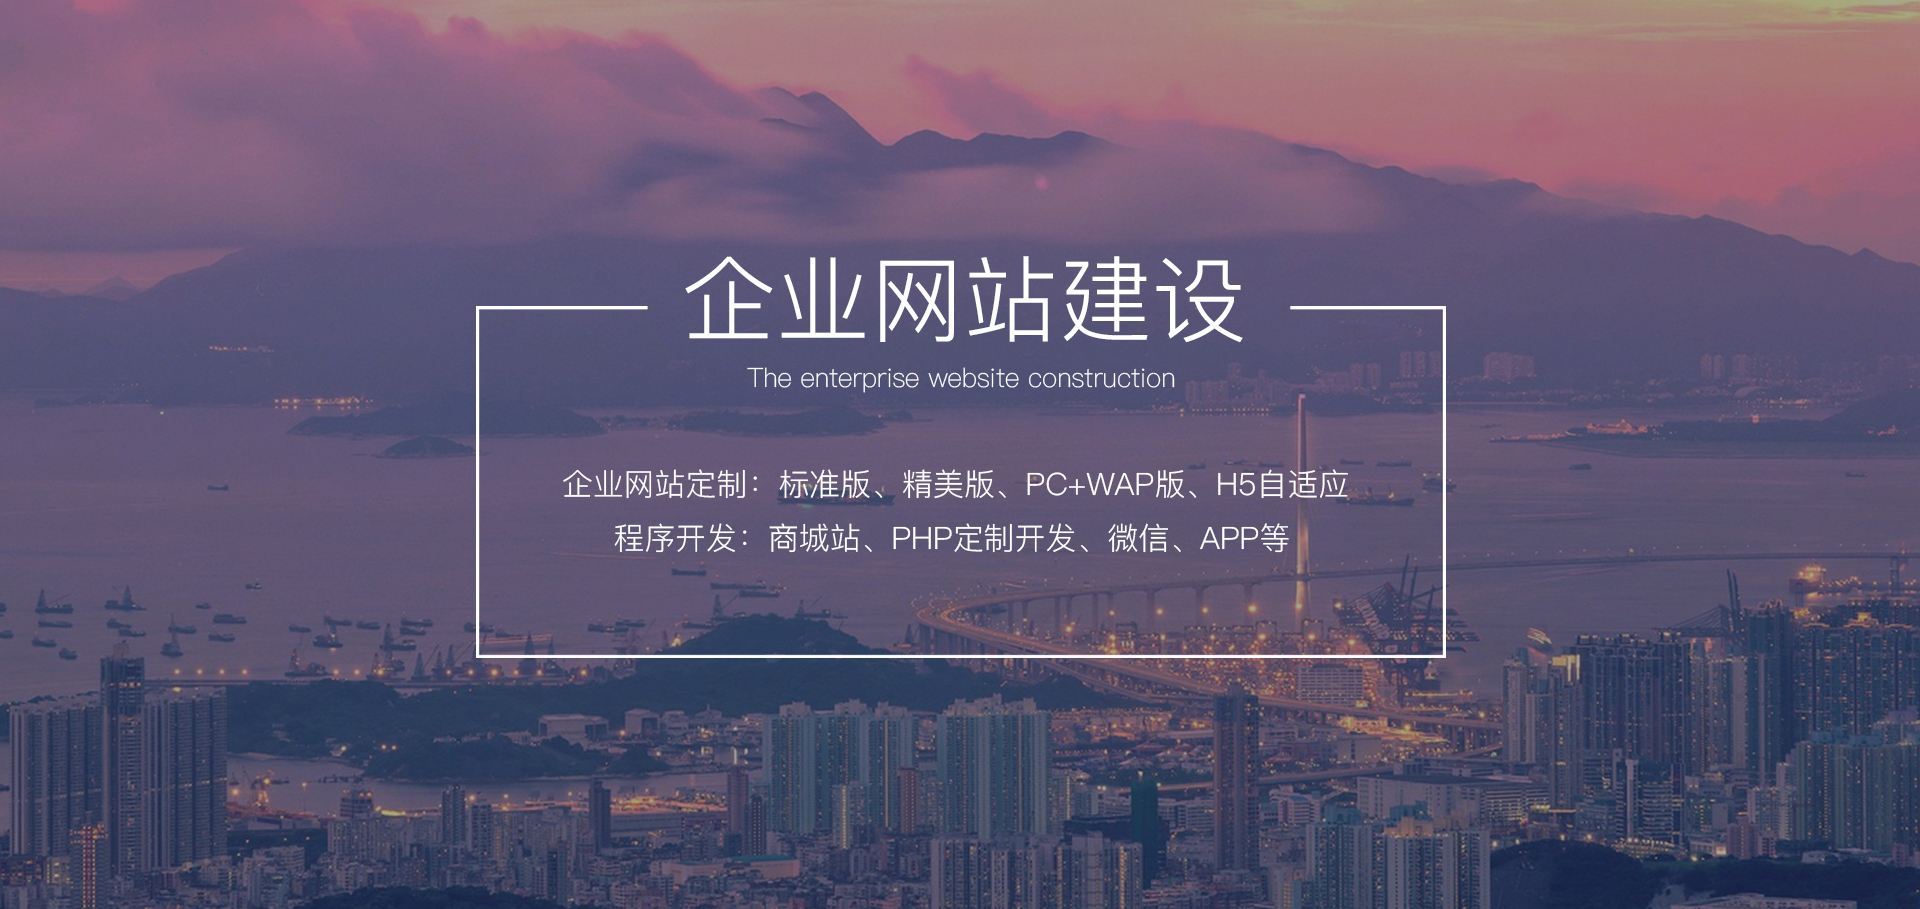 深圳分区优化住房限购政策；重症医学医疗服务建设将加强丨明日主题前瞻